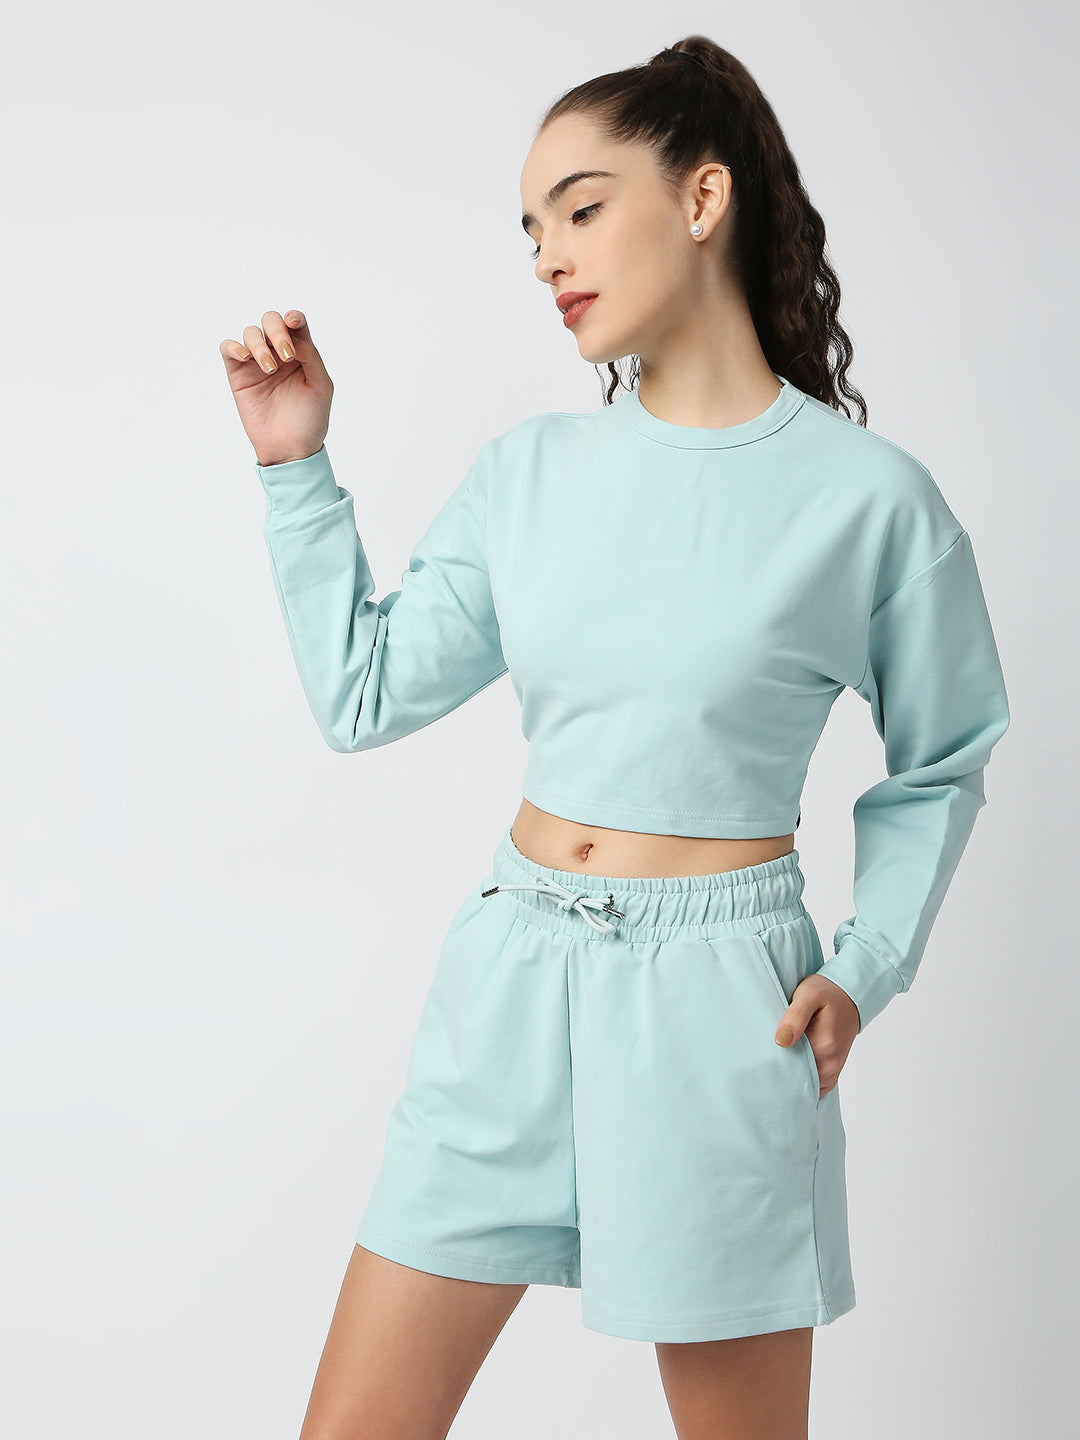 Buy Blamblack Women's Full sleeve Aqua Blue Color Co-ordinates Set